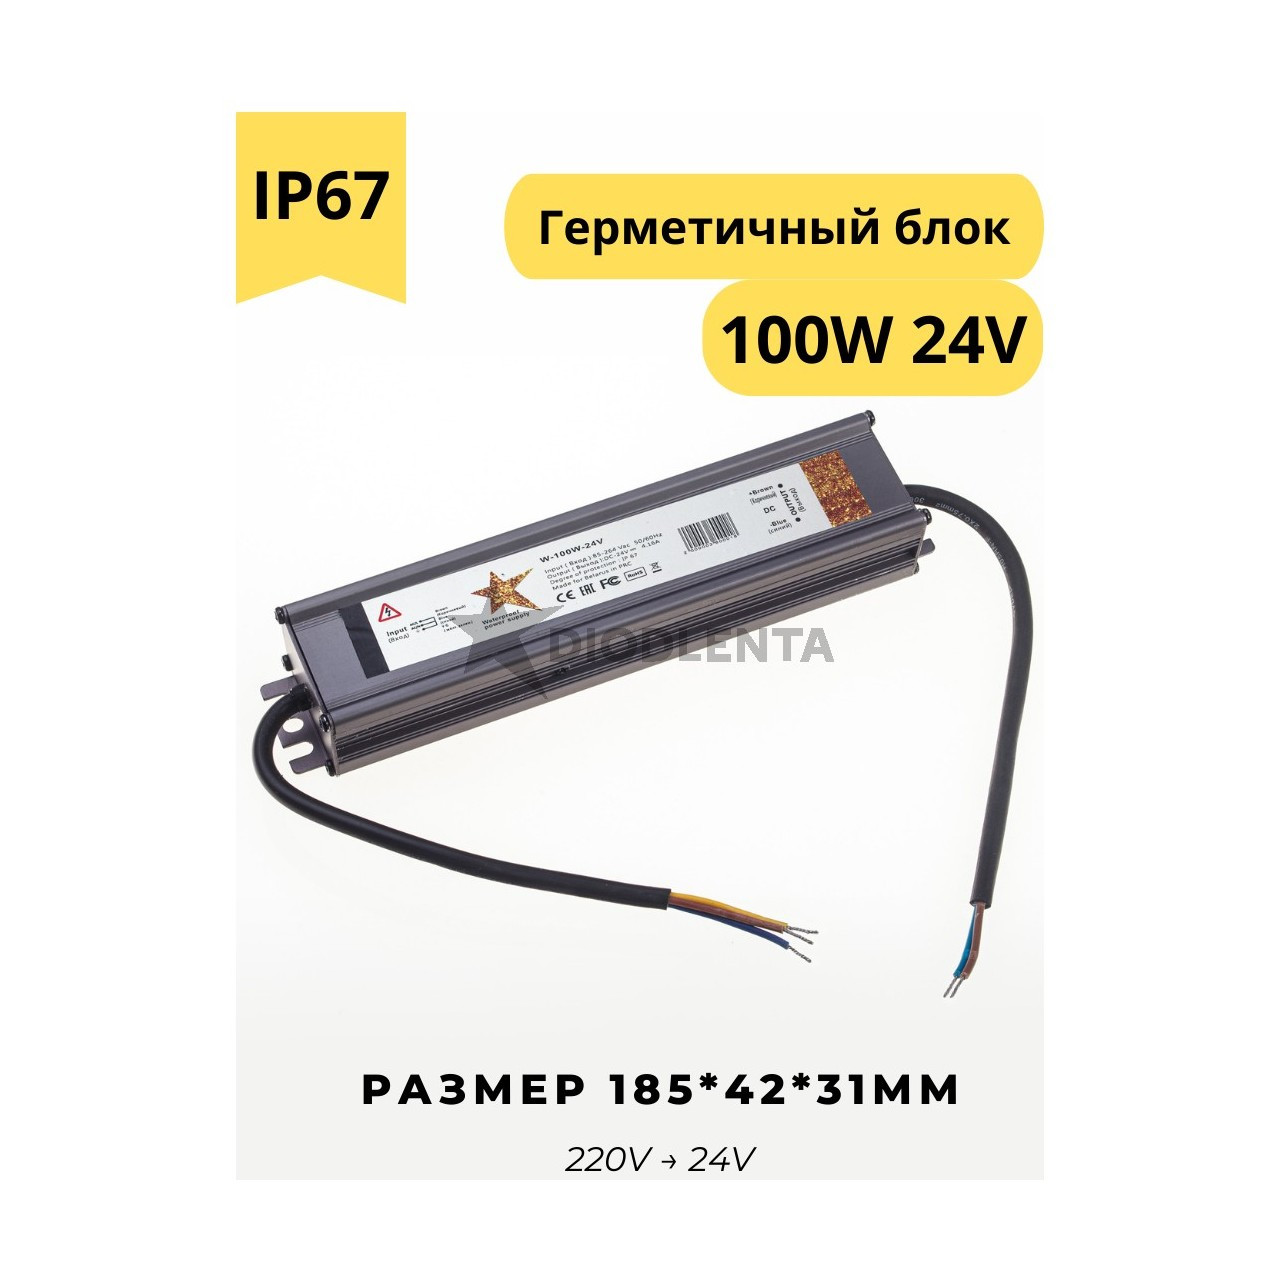 Герметичный блок питания W-100w-24v IP67 для светодиодных лент